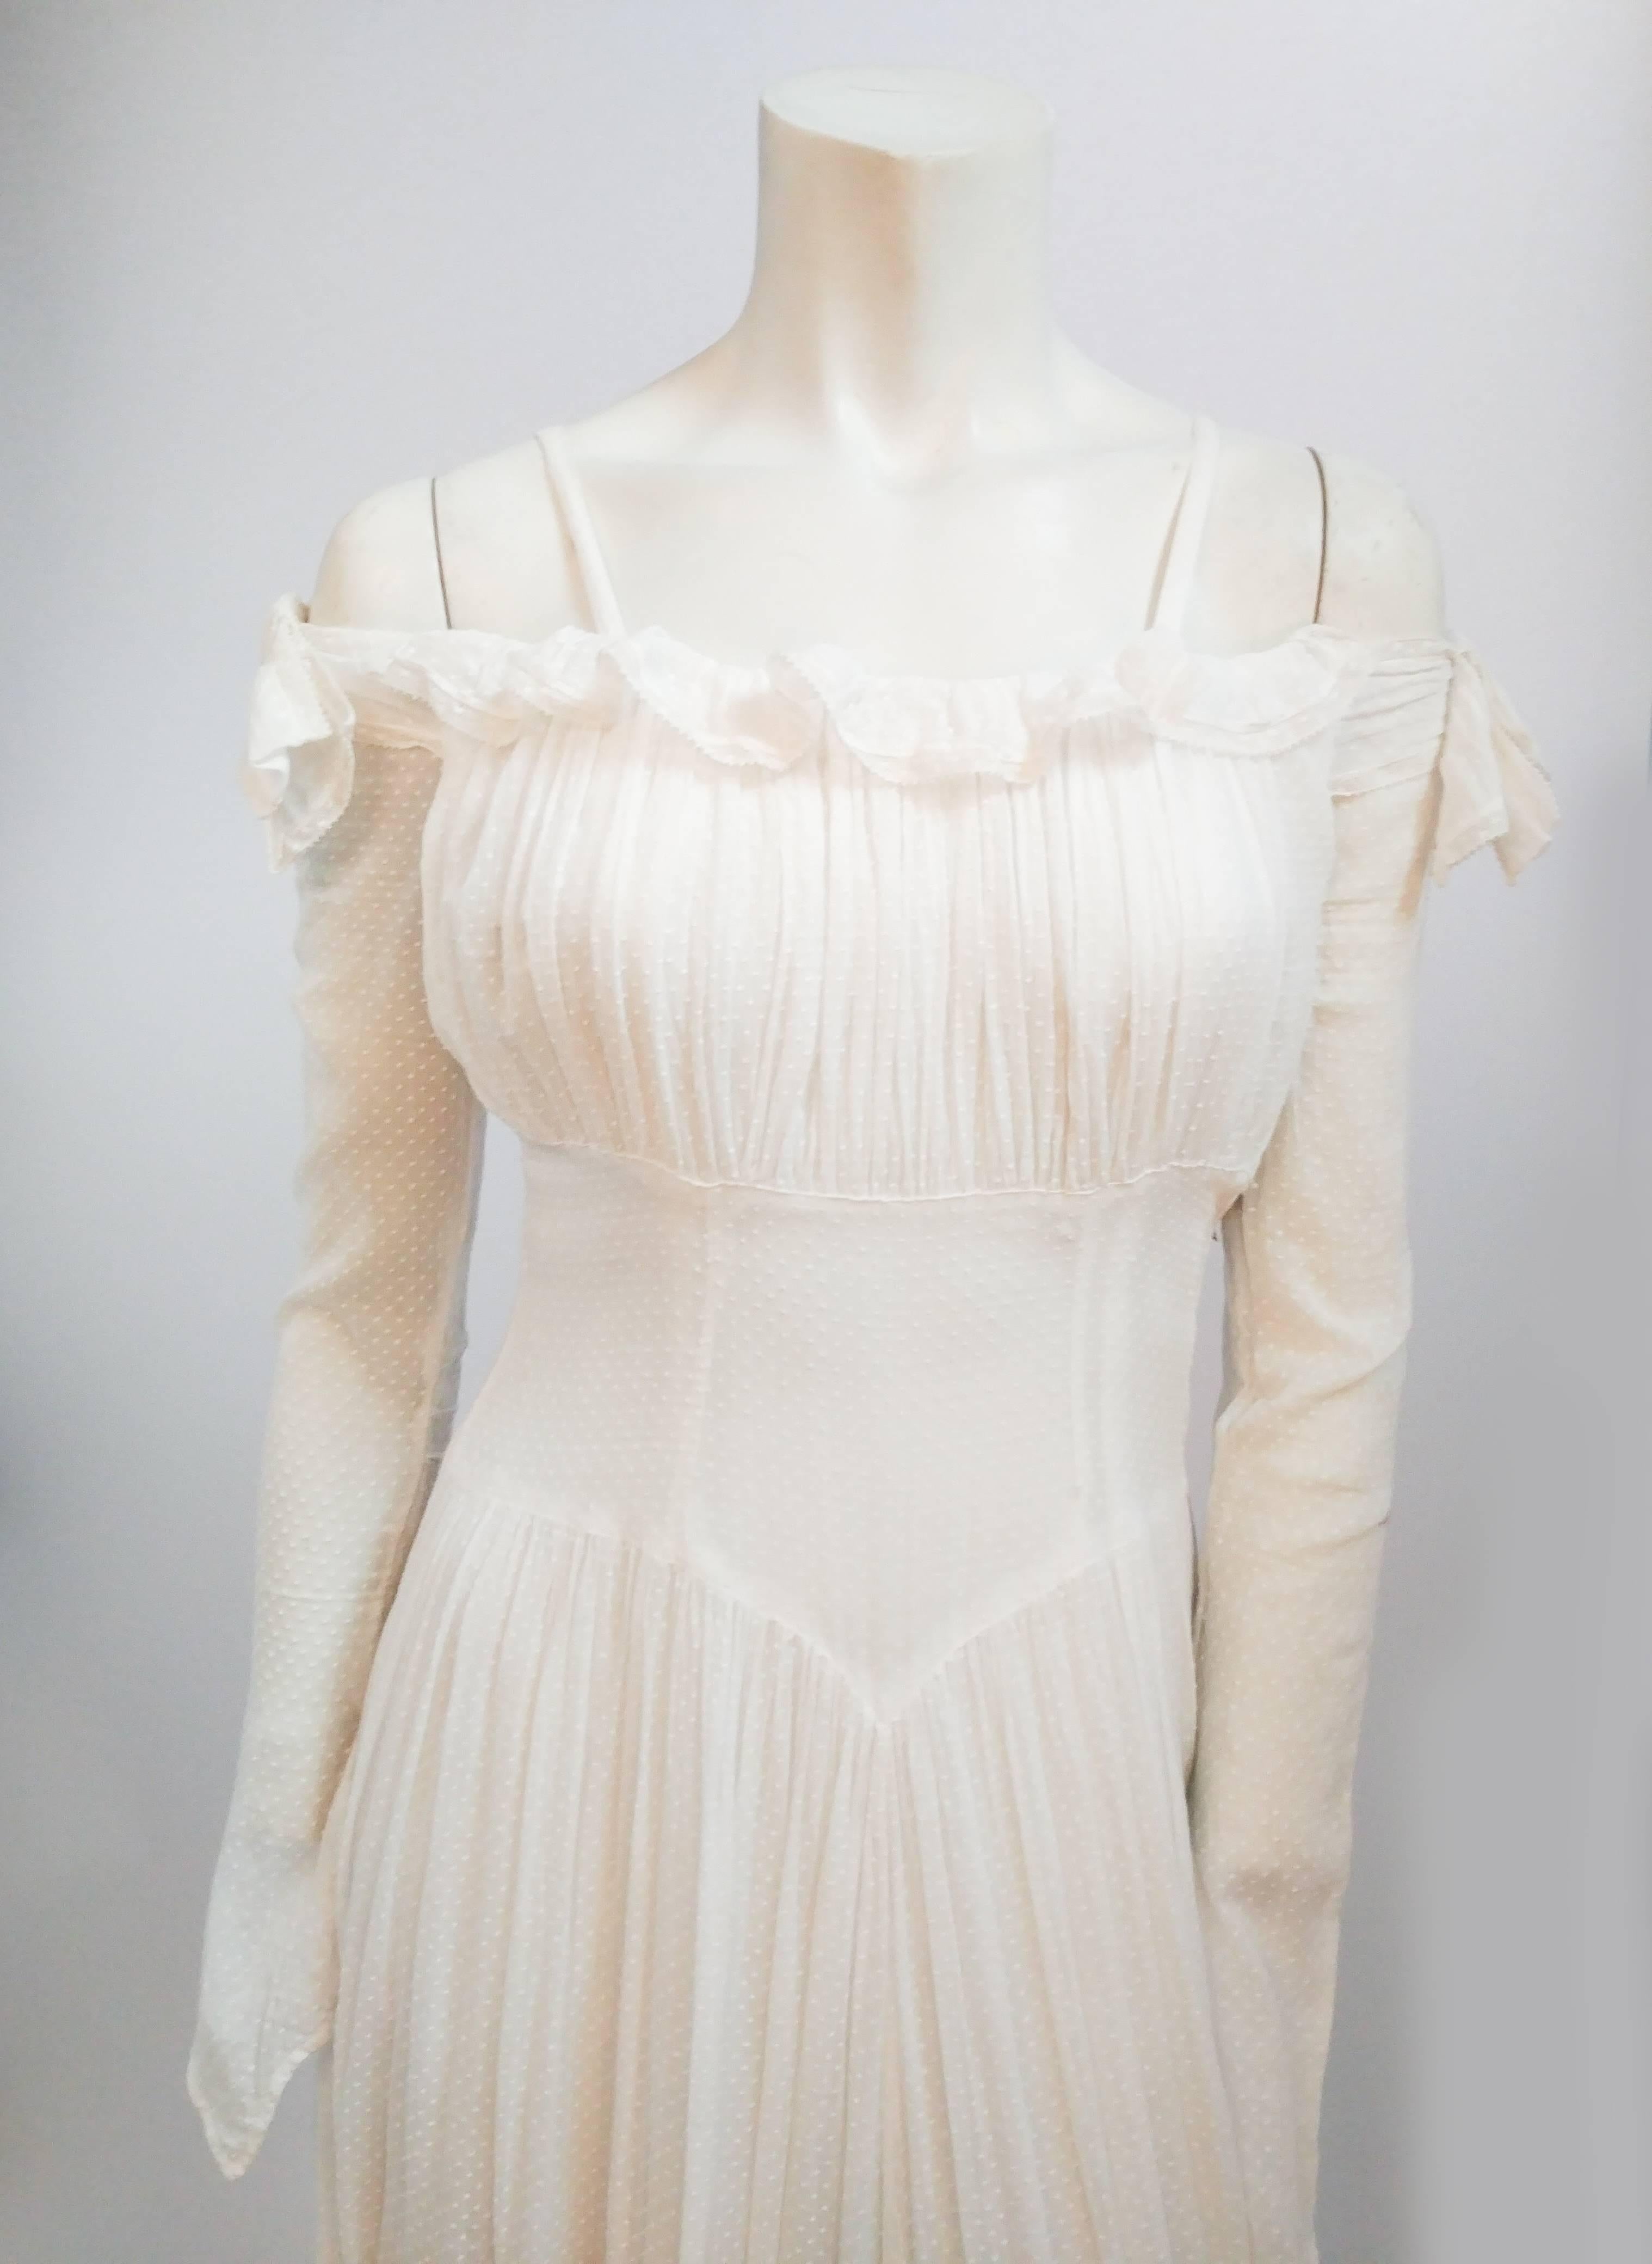 robe de mariée blanche à pois suisse des années 1940. Les épaules sont ornées de petits volants. Les manches longues arrivent à un point à la main. Buste froncé et basque à la taille. Une traîne pleine longueur dans le dos. 